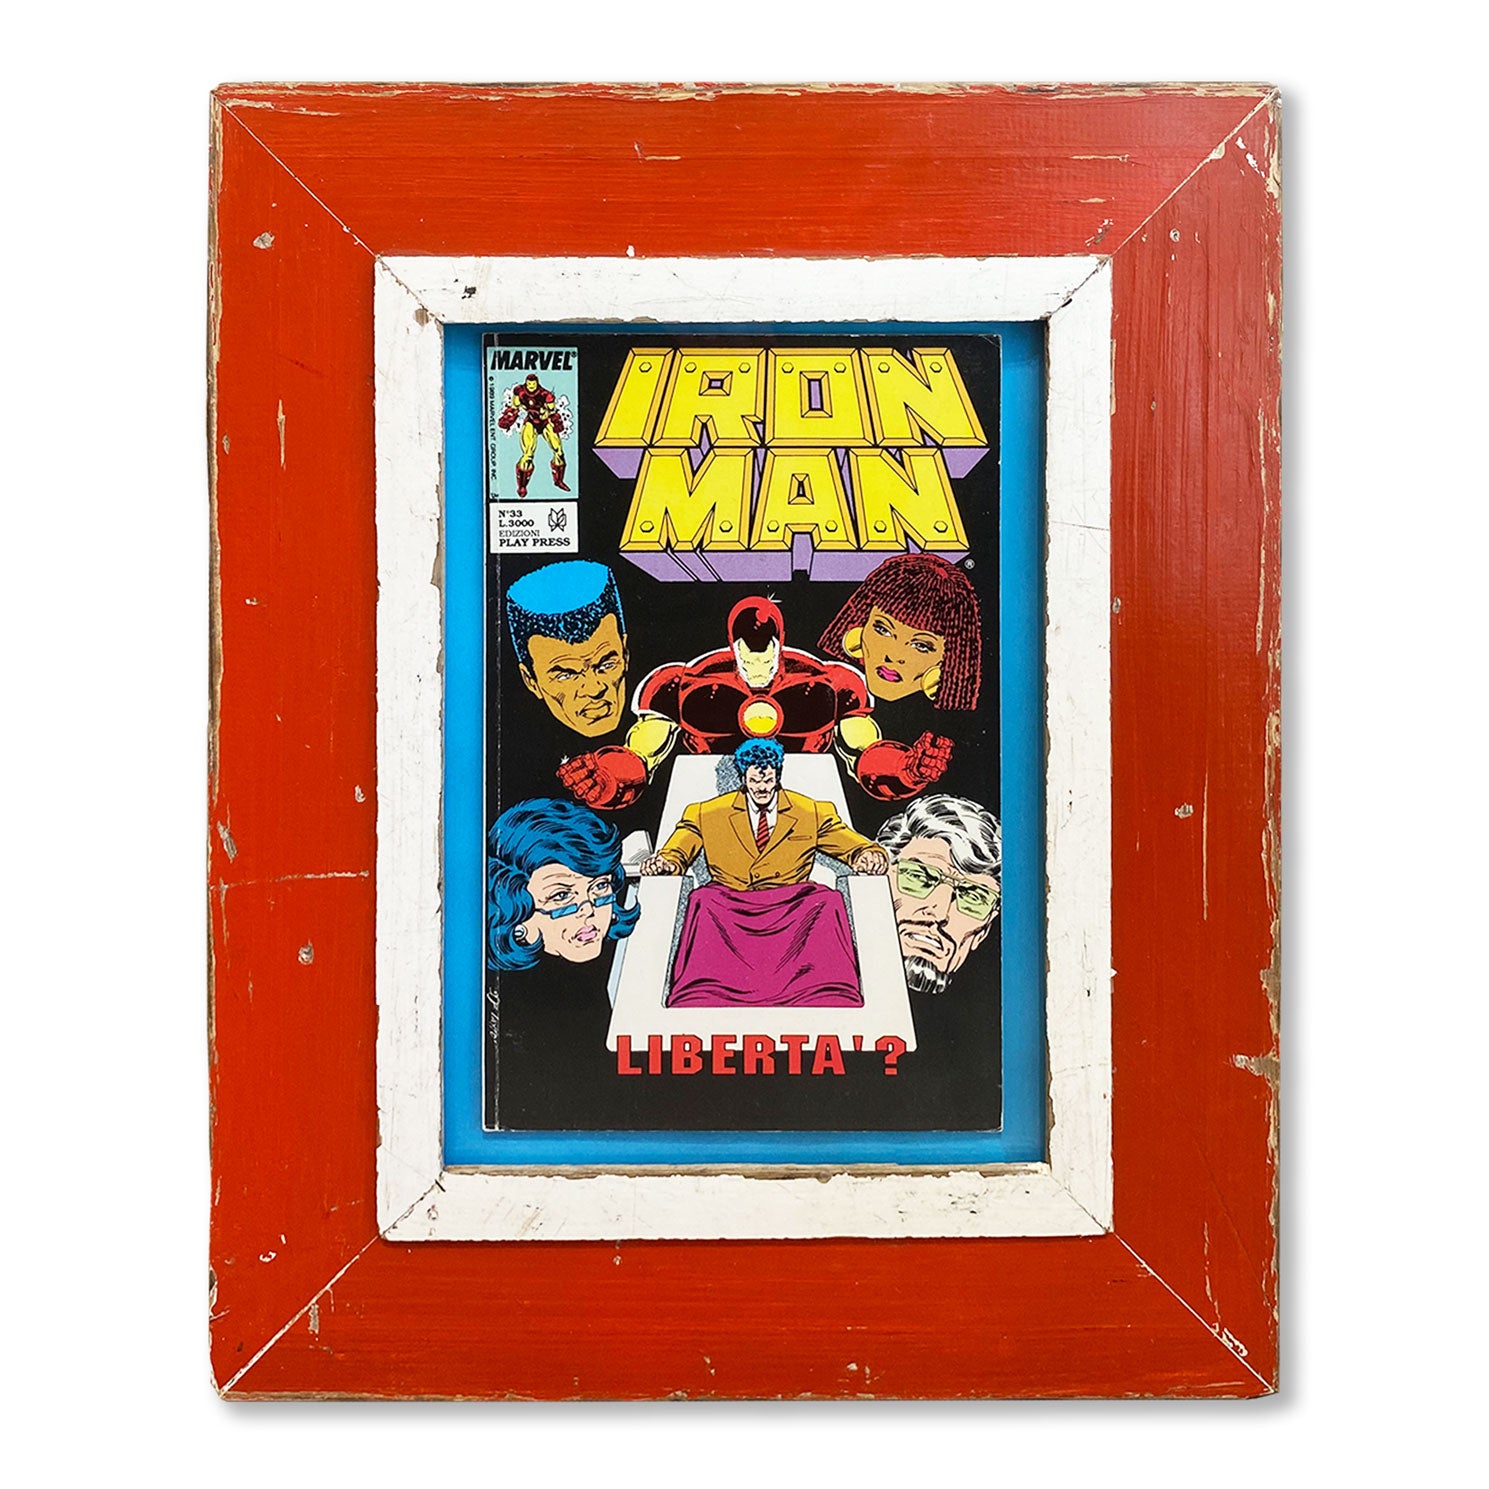 Fumetto Iron Man in cornice A4 rossa e bianca. Idea regalo appassionati fumetti